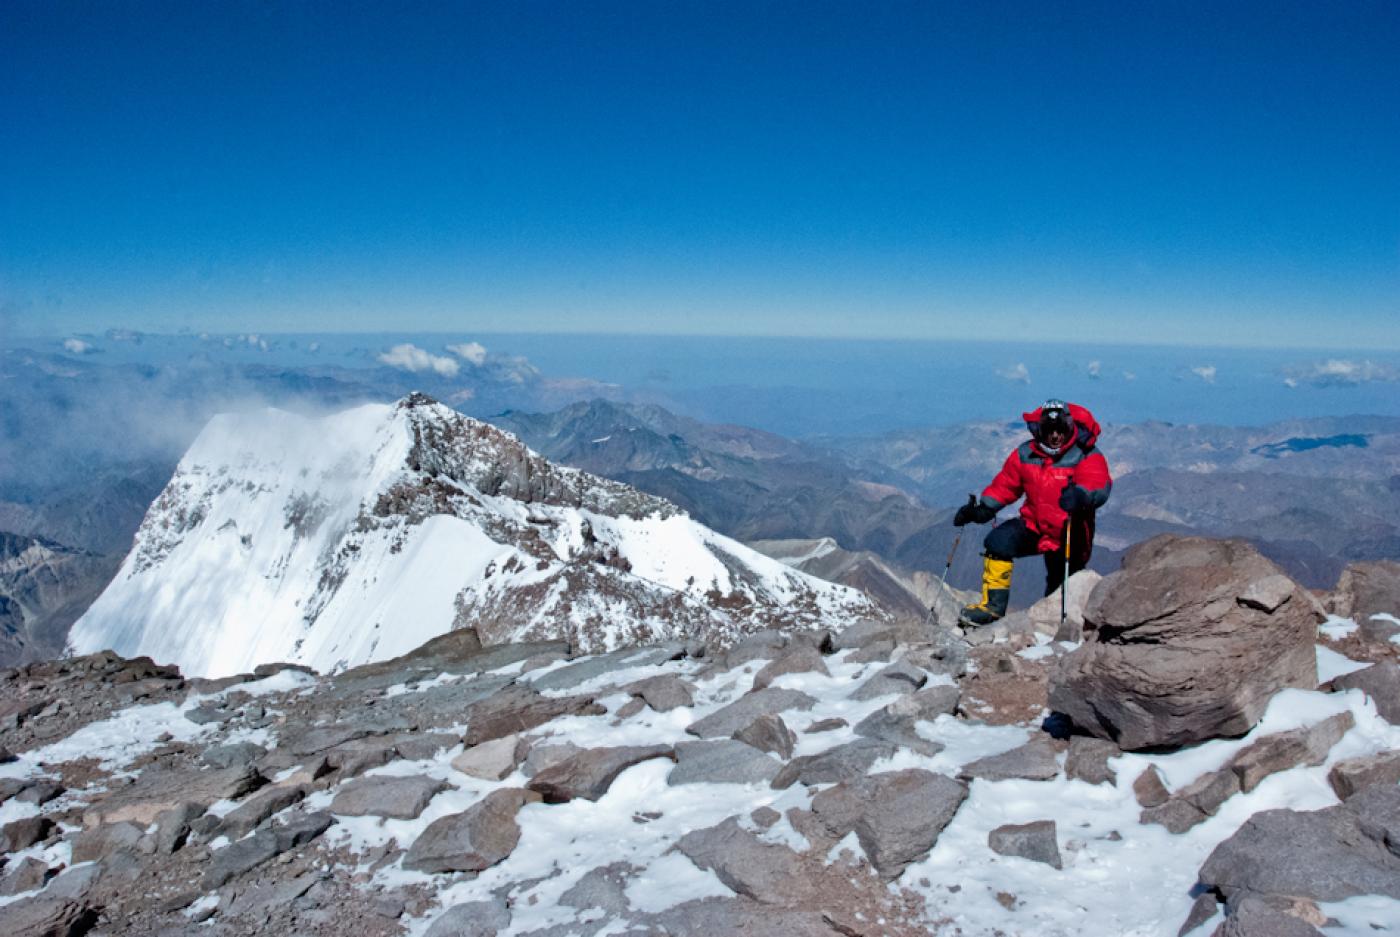  Последние метры перед выходом на вершину Аконкагуа, Аргентина